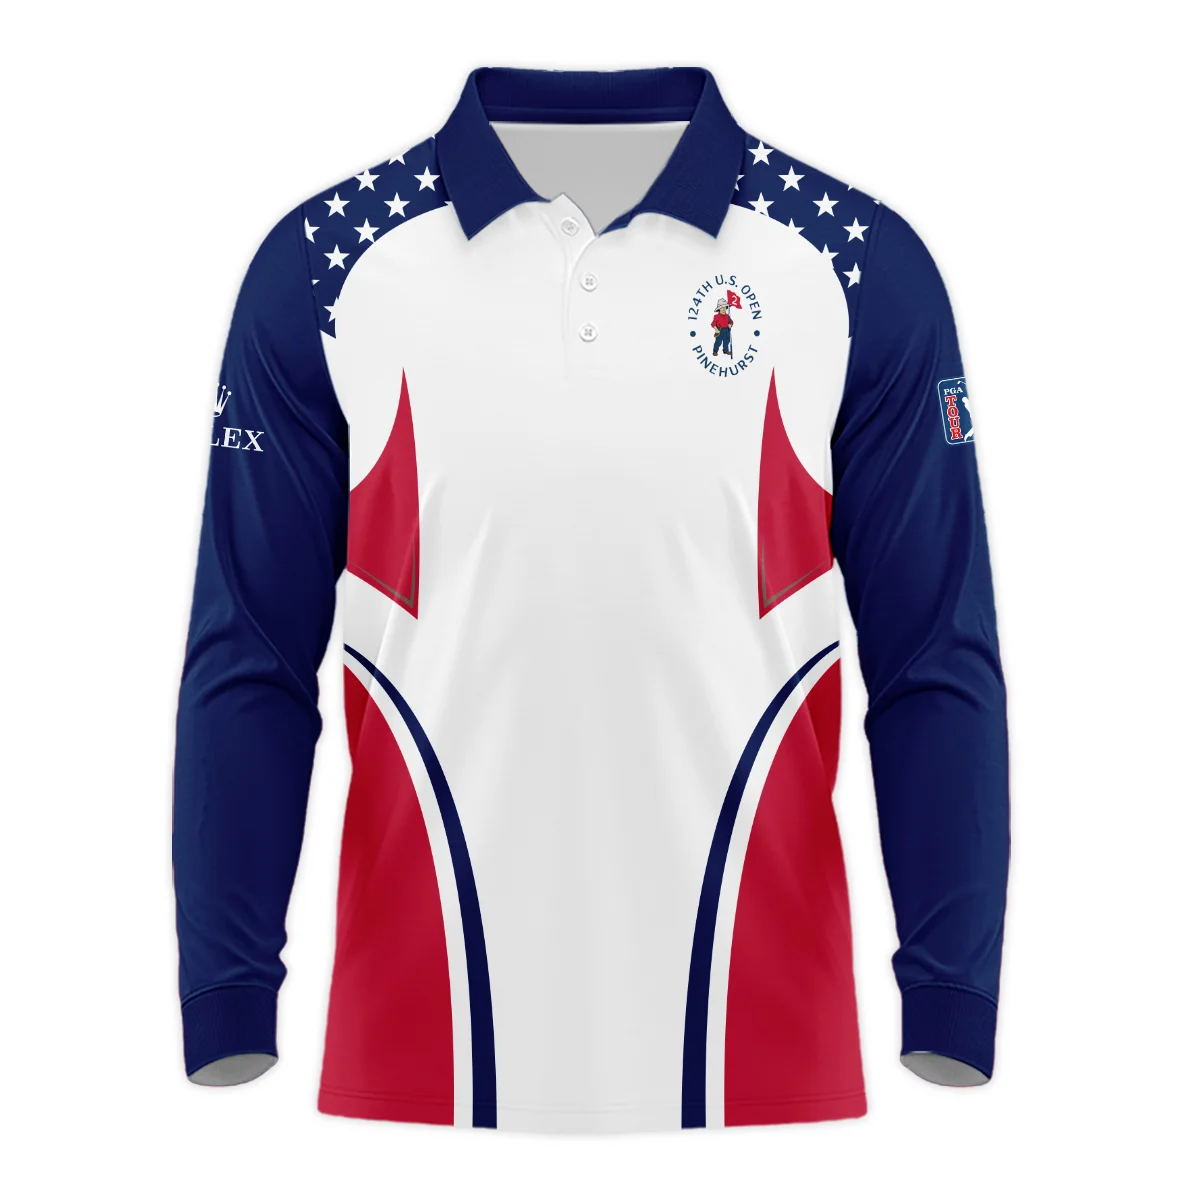 124th U.S. Open Pinehurst Rolex Stars White Dark Blue Red Line Long Polo Shirt Style Classic Long Polo Shirt For Men